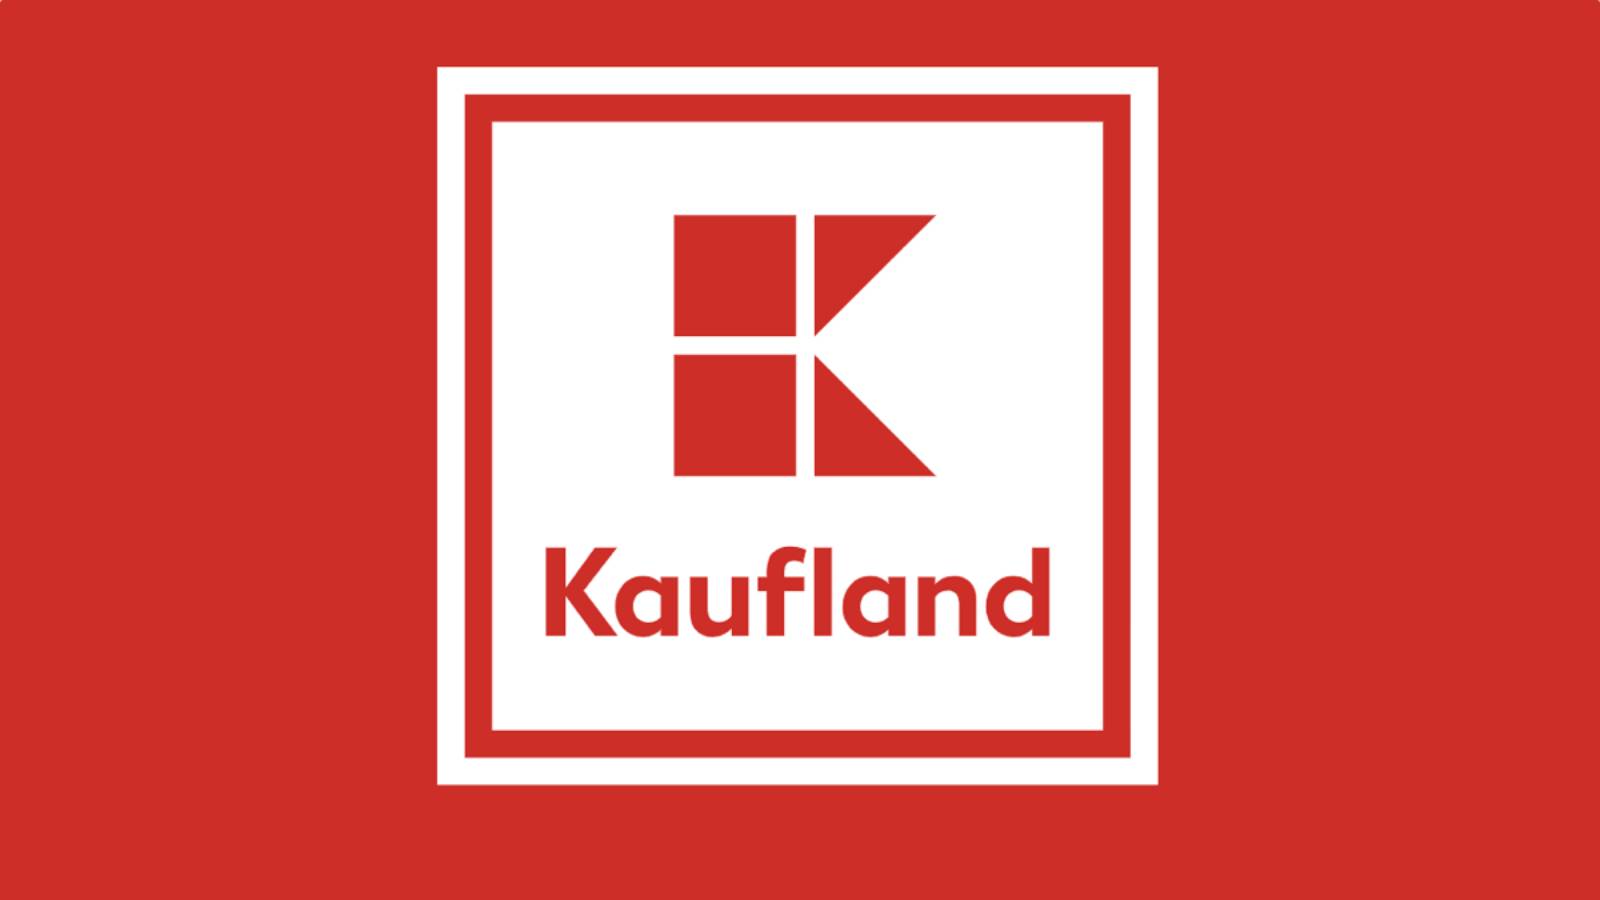 Kaufland IMPORTANT Anunt Oficial GRATUIT Romanilor Incepand Azi